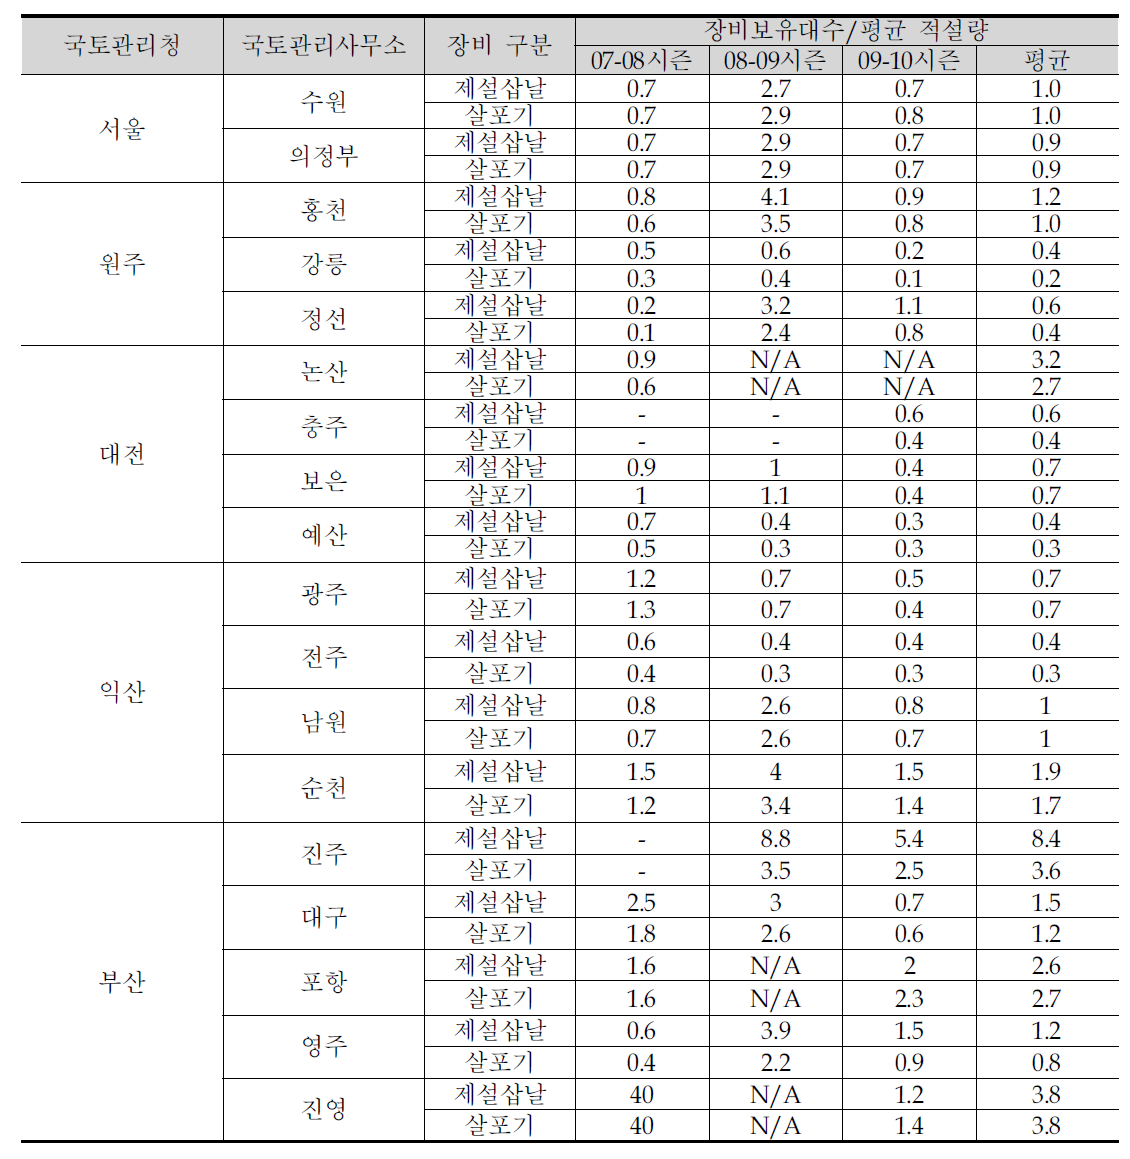 국토관리사무소의 시즌별 장비보유대수/평균 적설량 비교